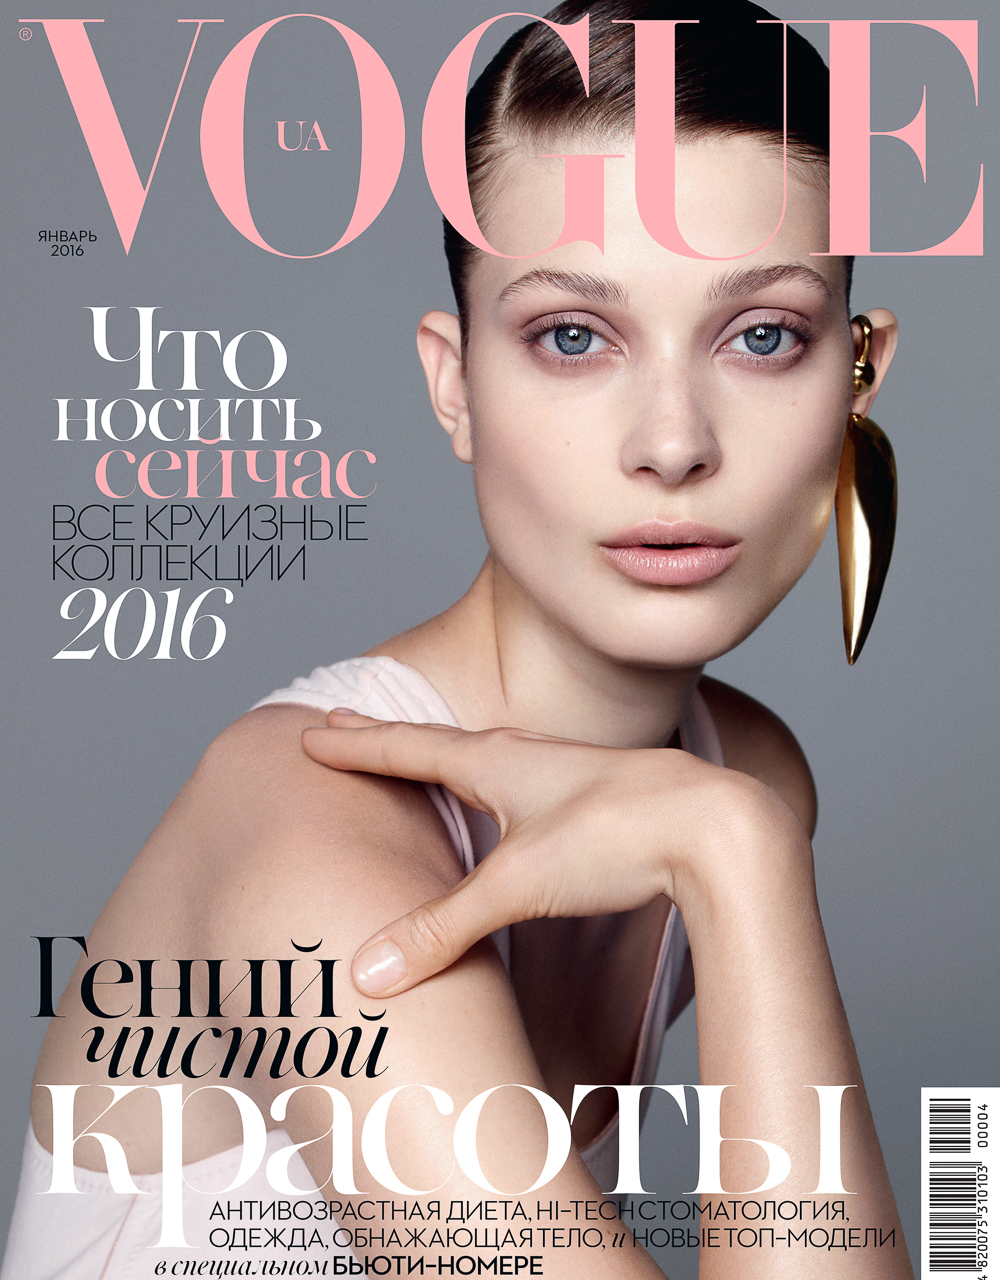 Vogue Ukraine January 2016 – Larissa Hofmann by Nagi Sakai